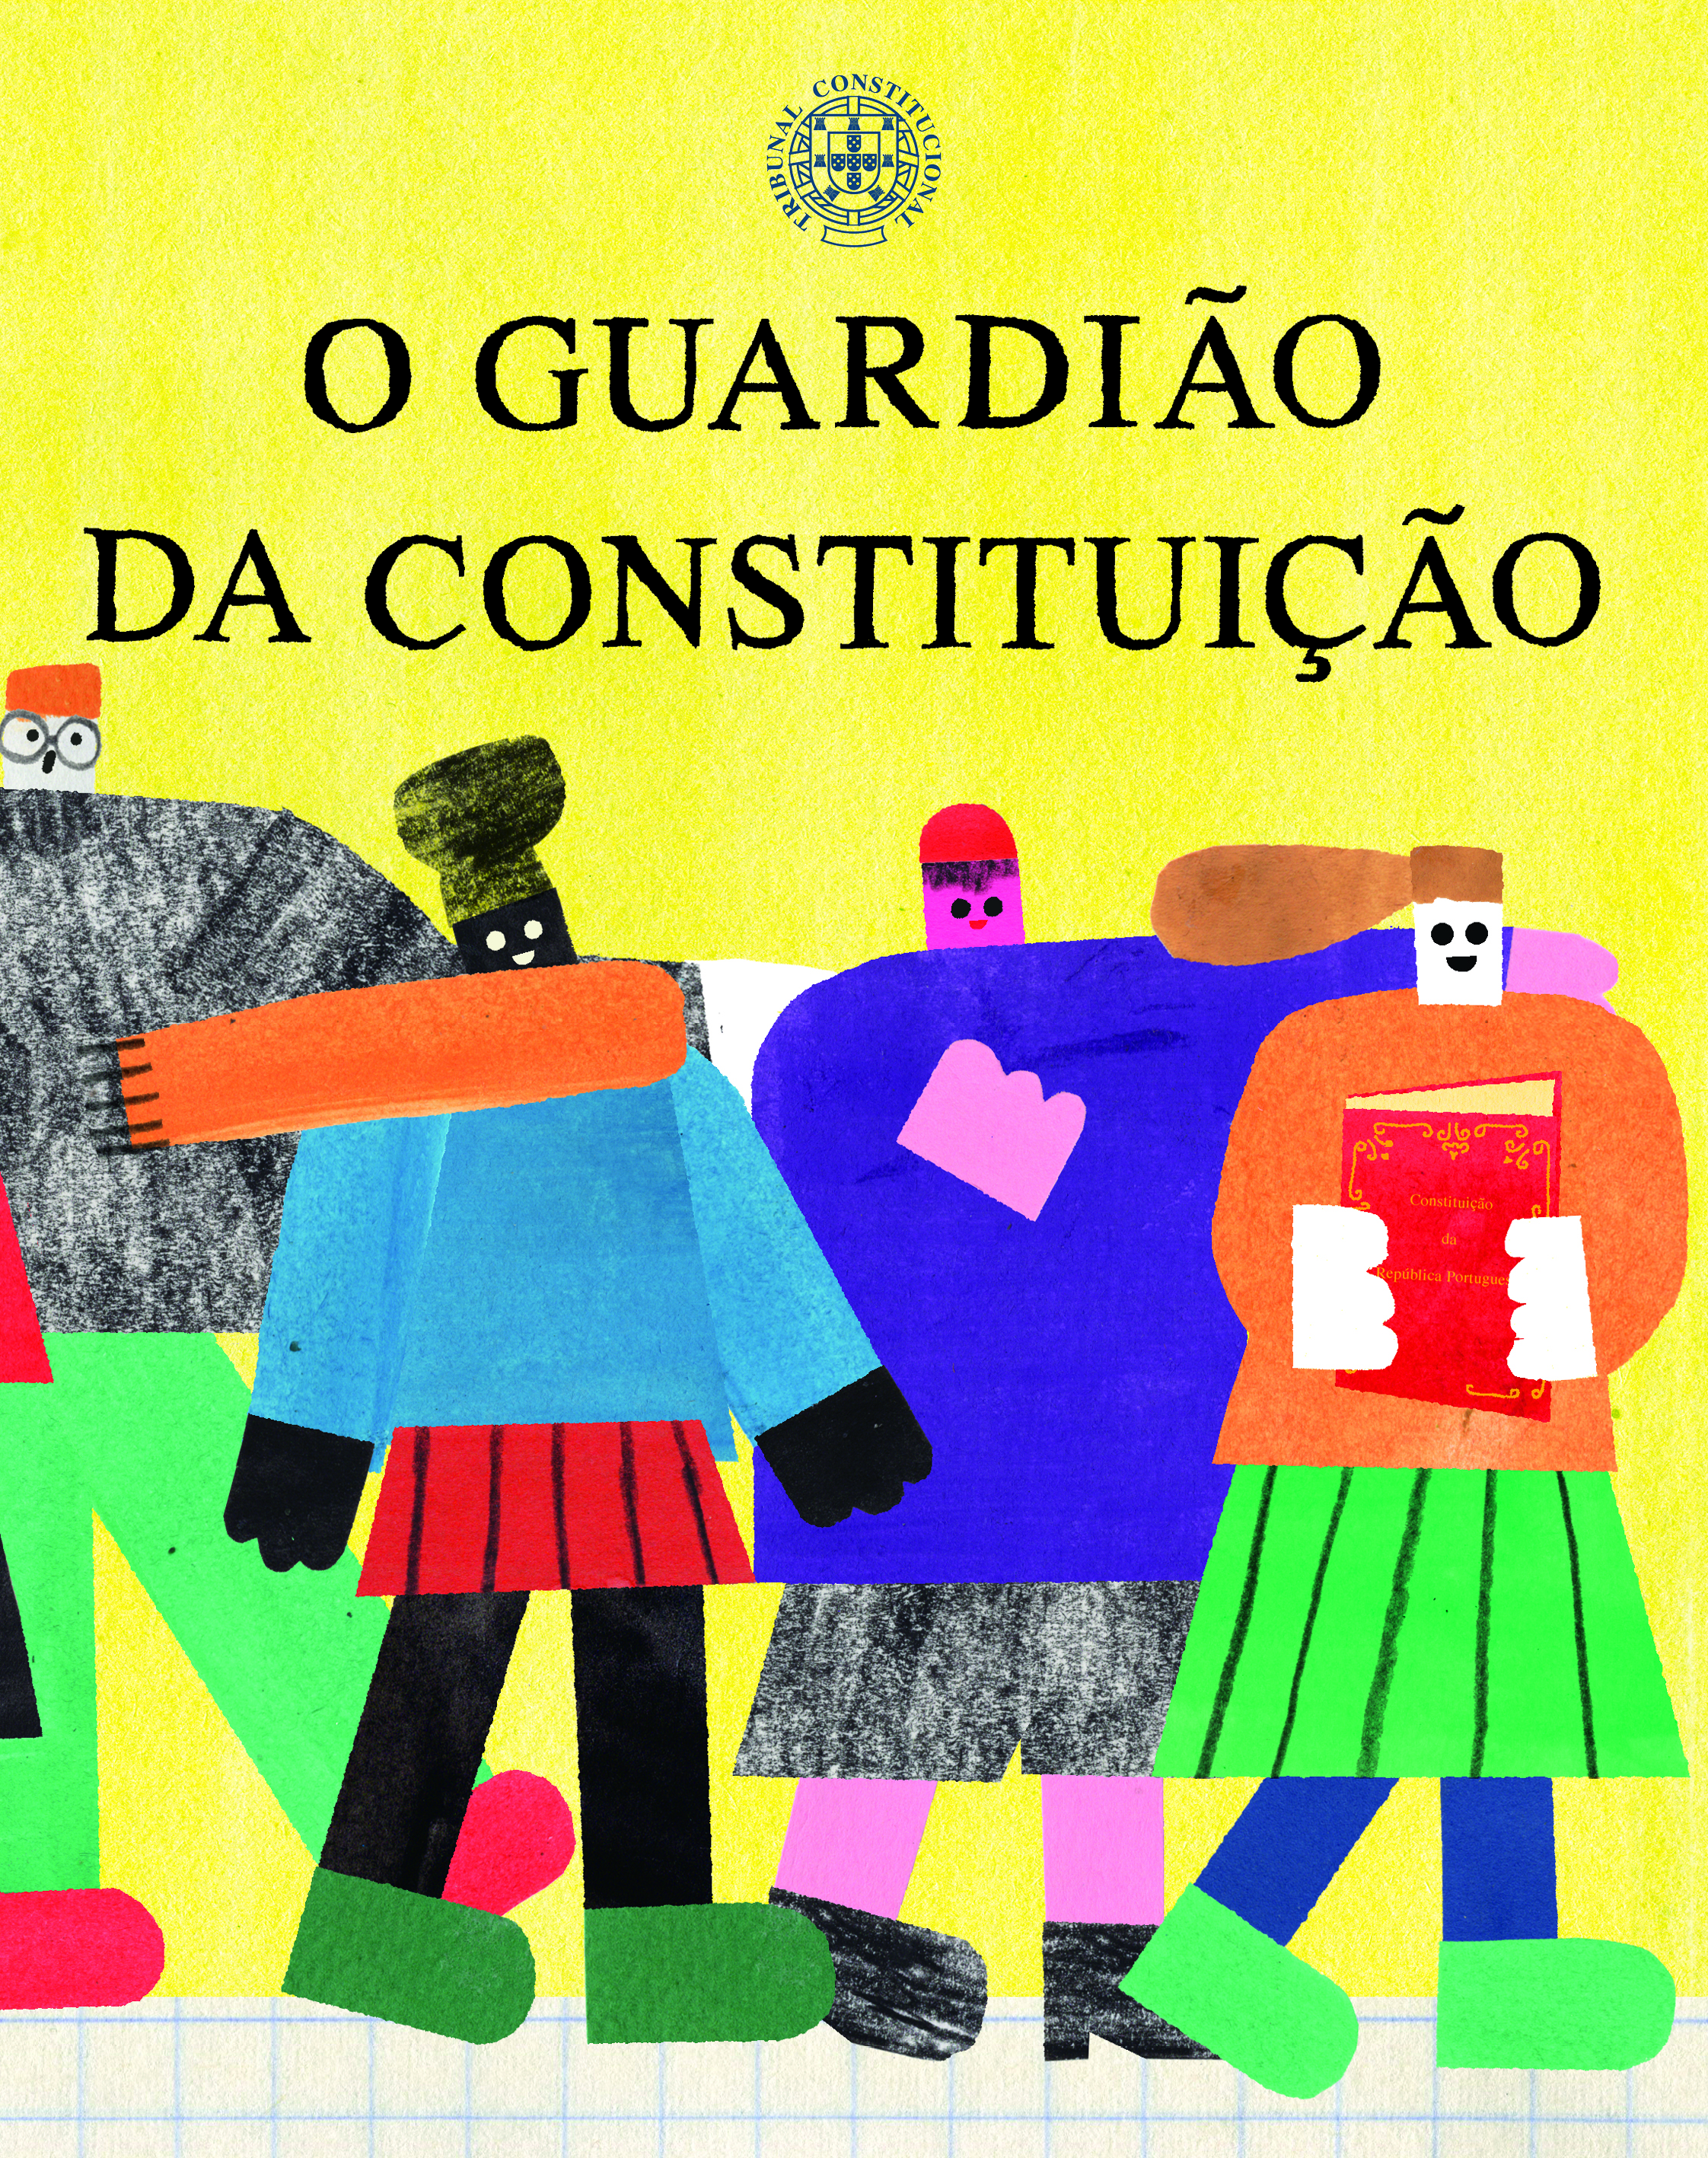   Lançamento do livro infantil O Guardião da Constituição  